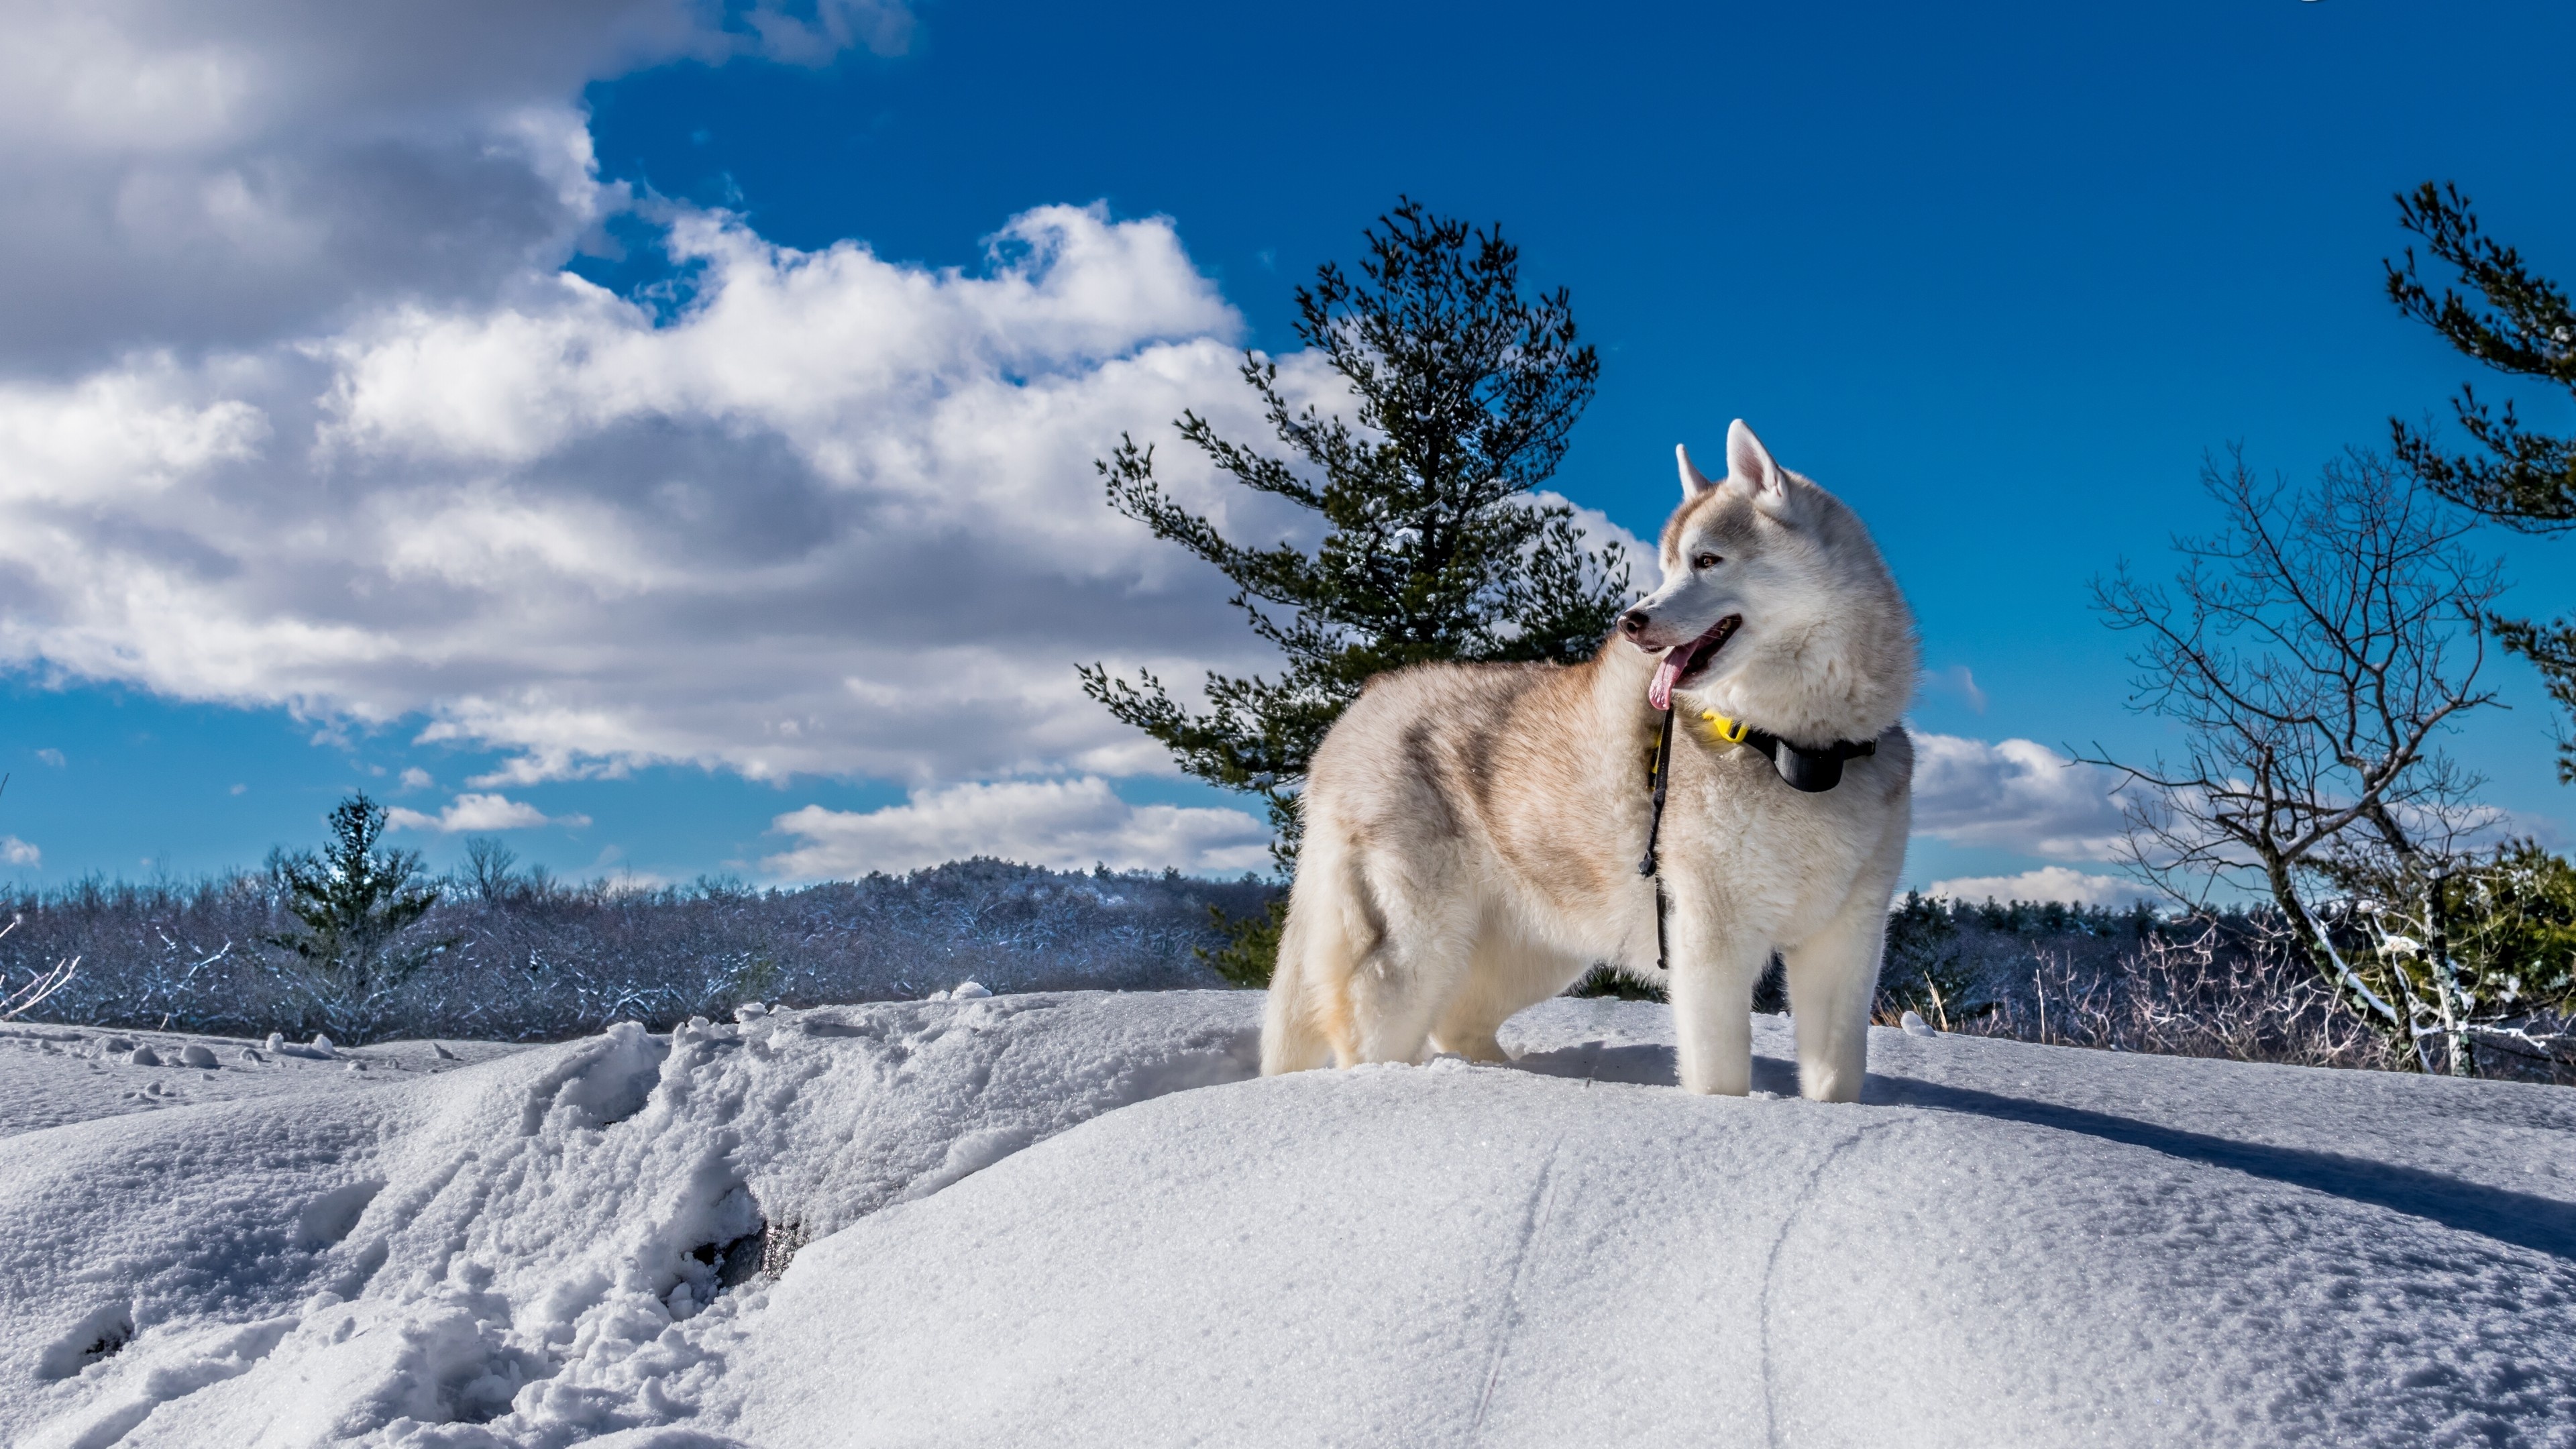 Snowy landscape, Husky Wallpaper, 3840x2160 4K Desktop